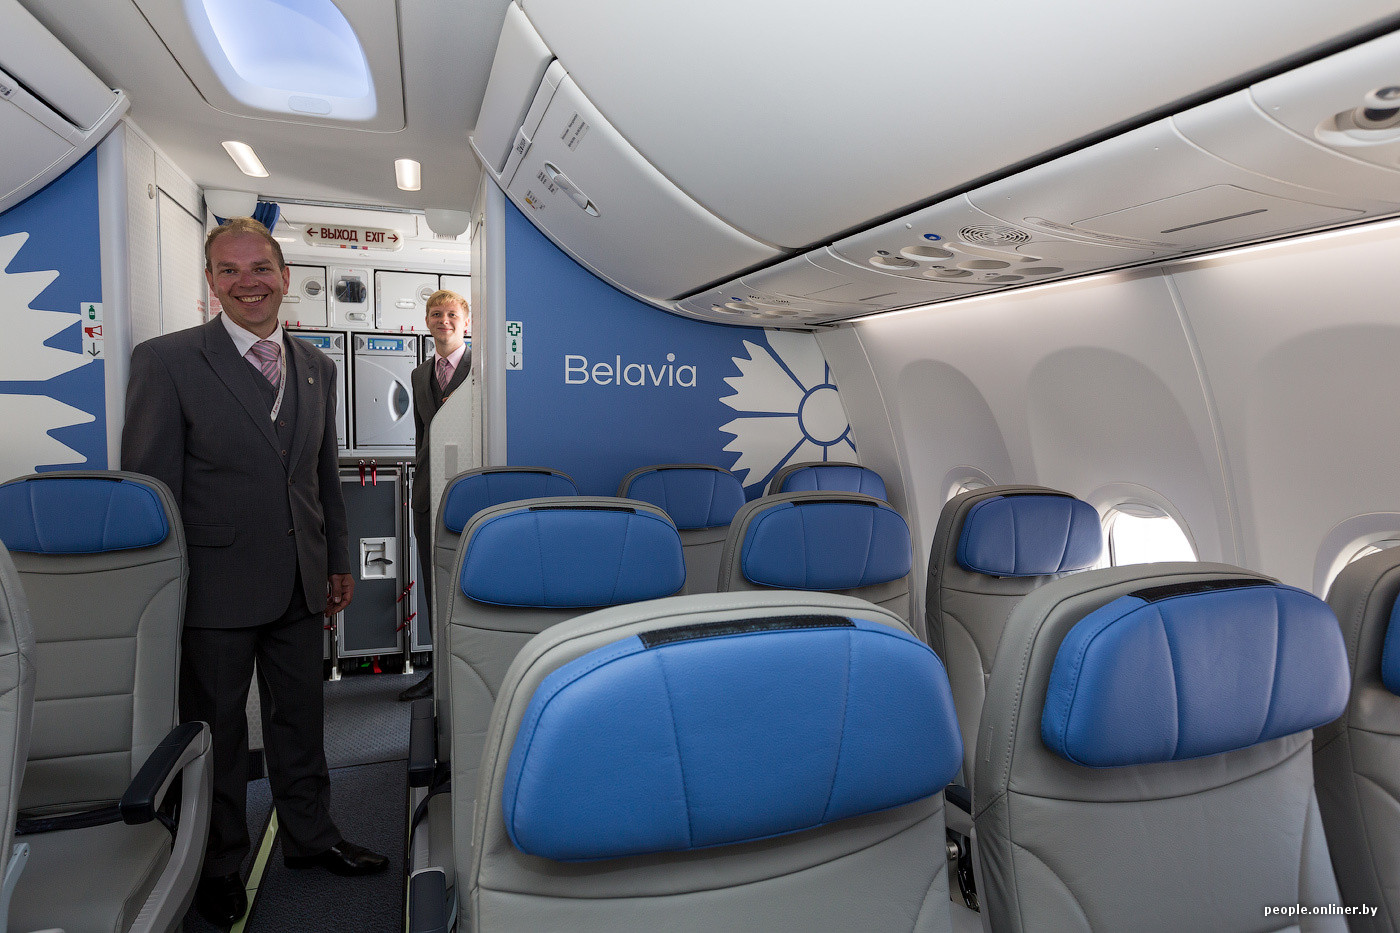 Сайт белавиа минск. Embraer e195 Belavia салон. Belavia бизнес класс e195. Белавиа бизнес класс 737. Boeing 737 Max 8 бизнес класс Белавиа.